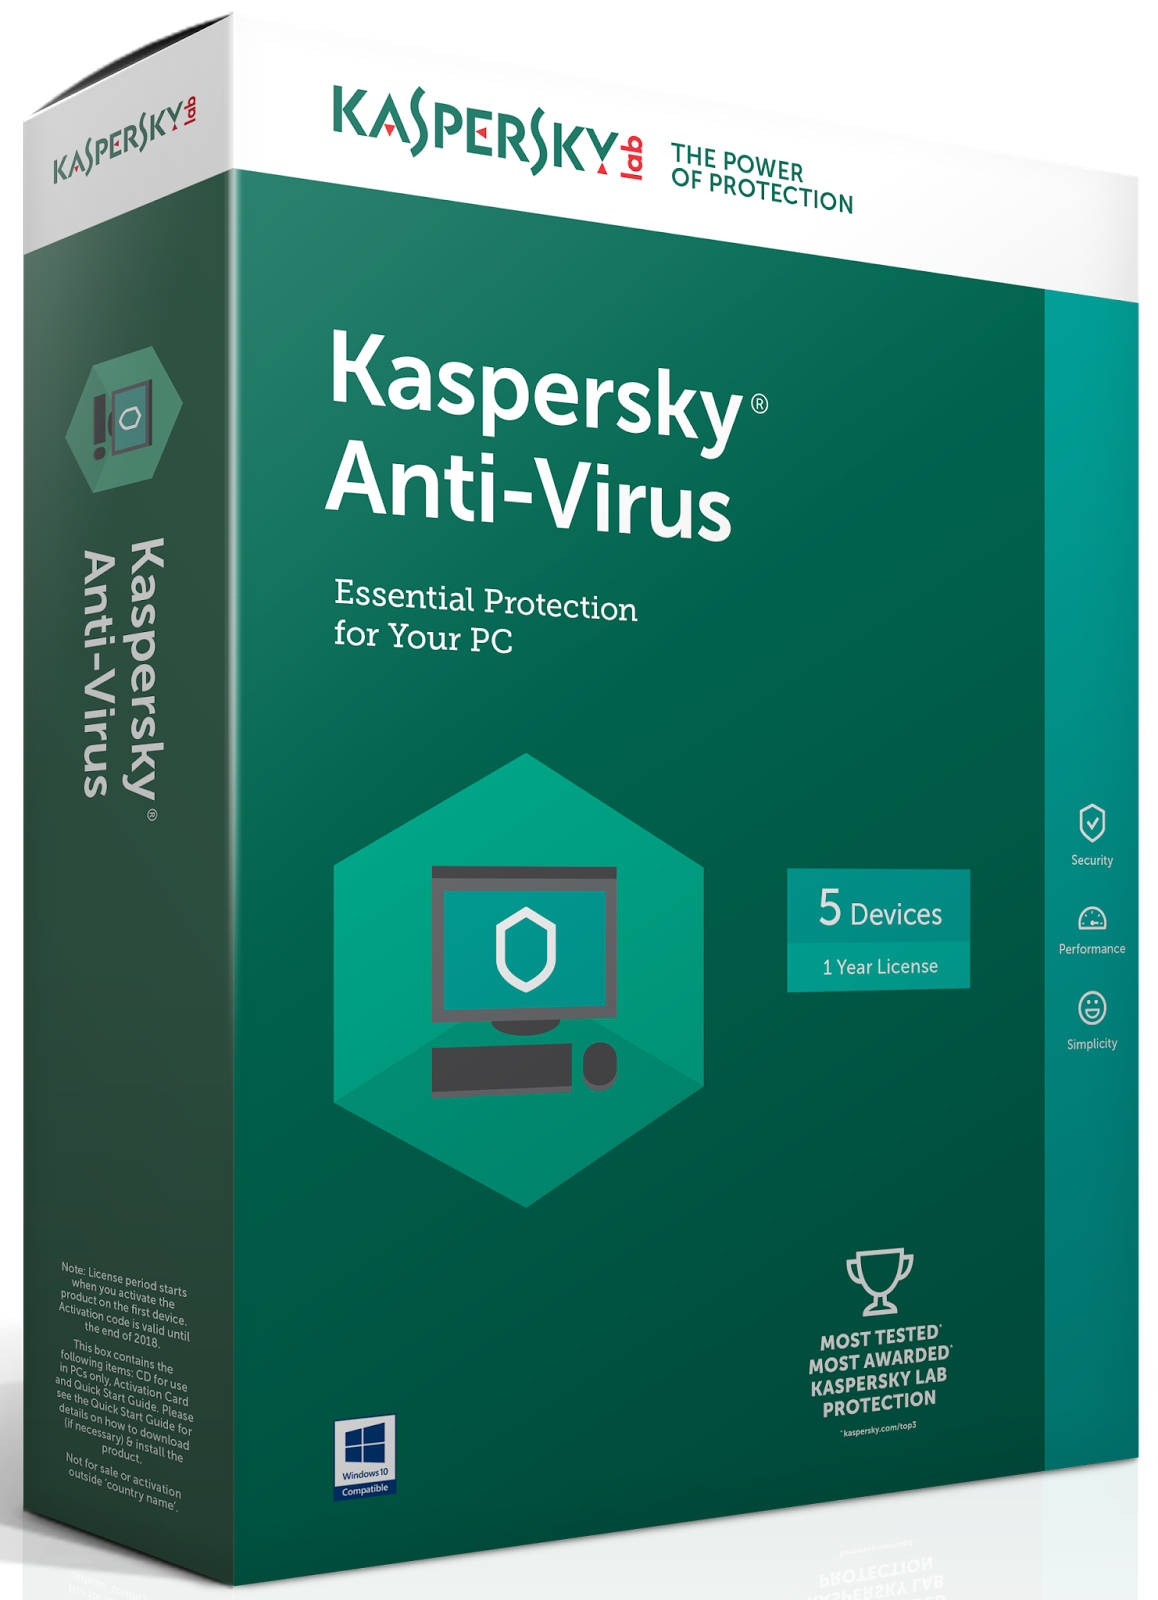 Kaspersky 10 download windows 10